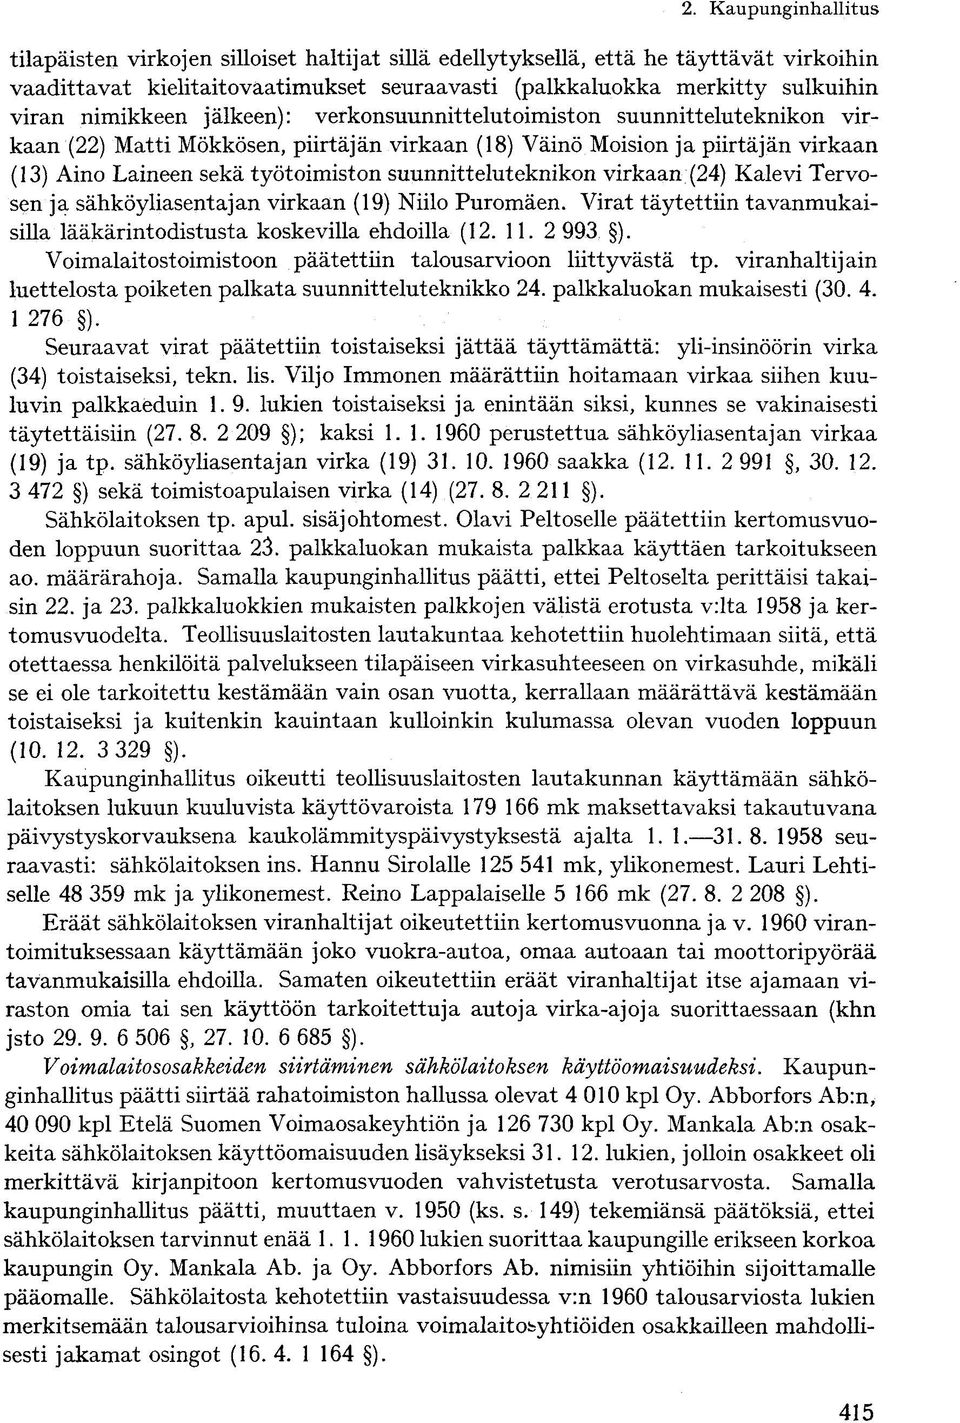 suunnitteluteknikon virkaan (24) Kalevi Tervosen ja sähköyliasentajan virkaan (19) Niilo Puromäen. Virat täytettiin tavanmukaisilla lääkärintodistusta koskevilla ehdoilla (12. 11.2 993 ).